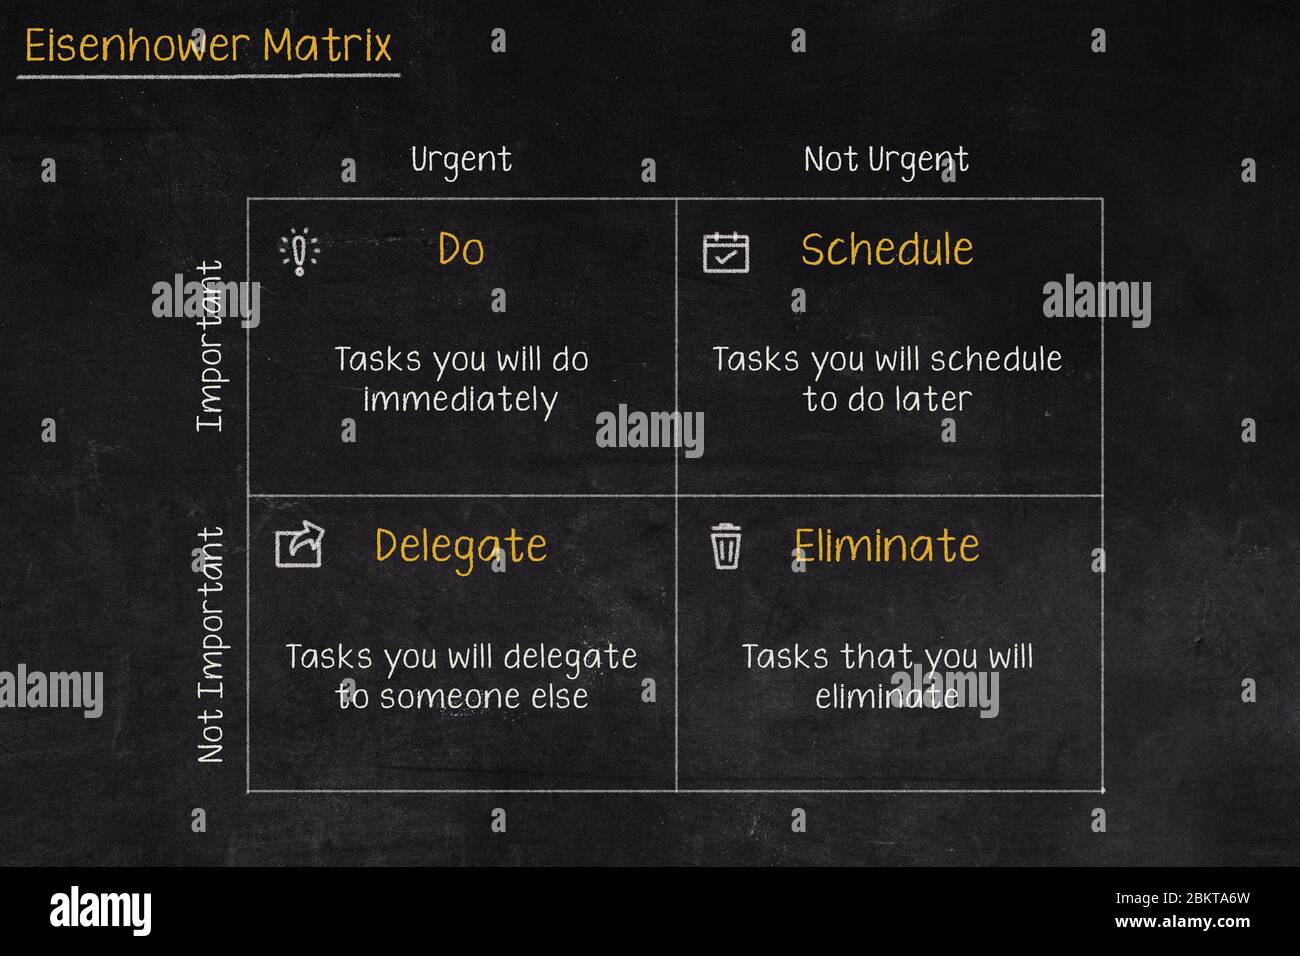 Eisenhower Matrix, dringende wichtige Matrix, Aufgabe priorisieren, Aufgabenmanagement, Projektmanagement, Prozess-Infografiken Stockfoto